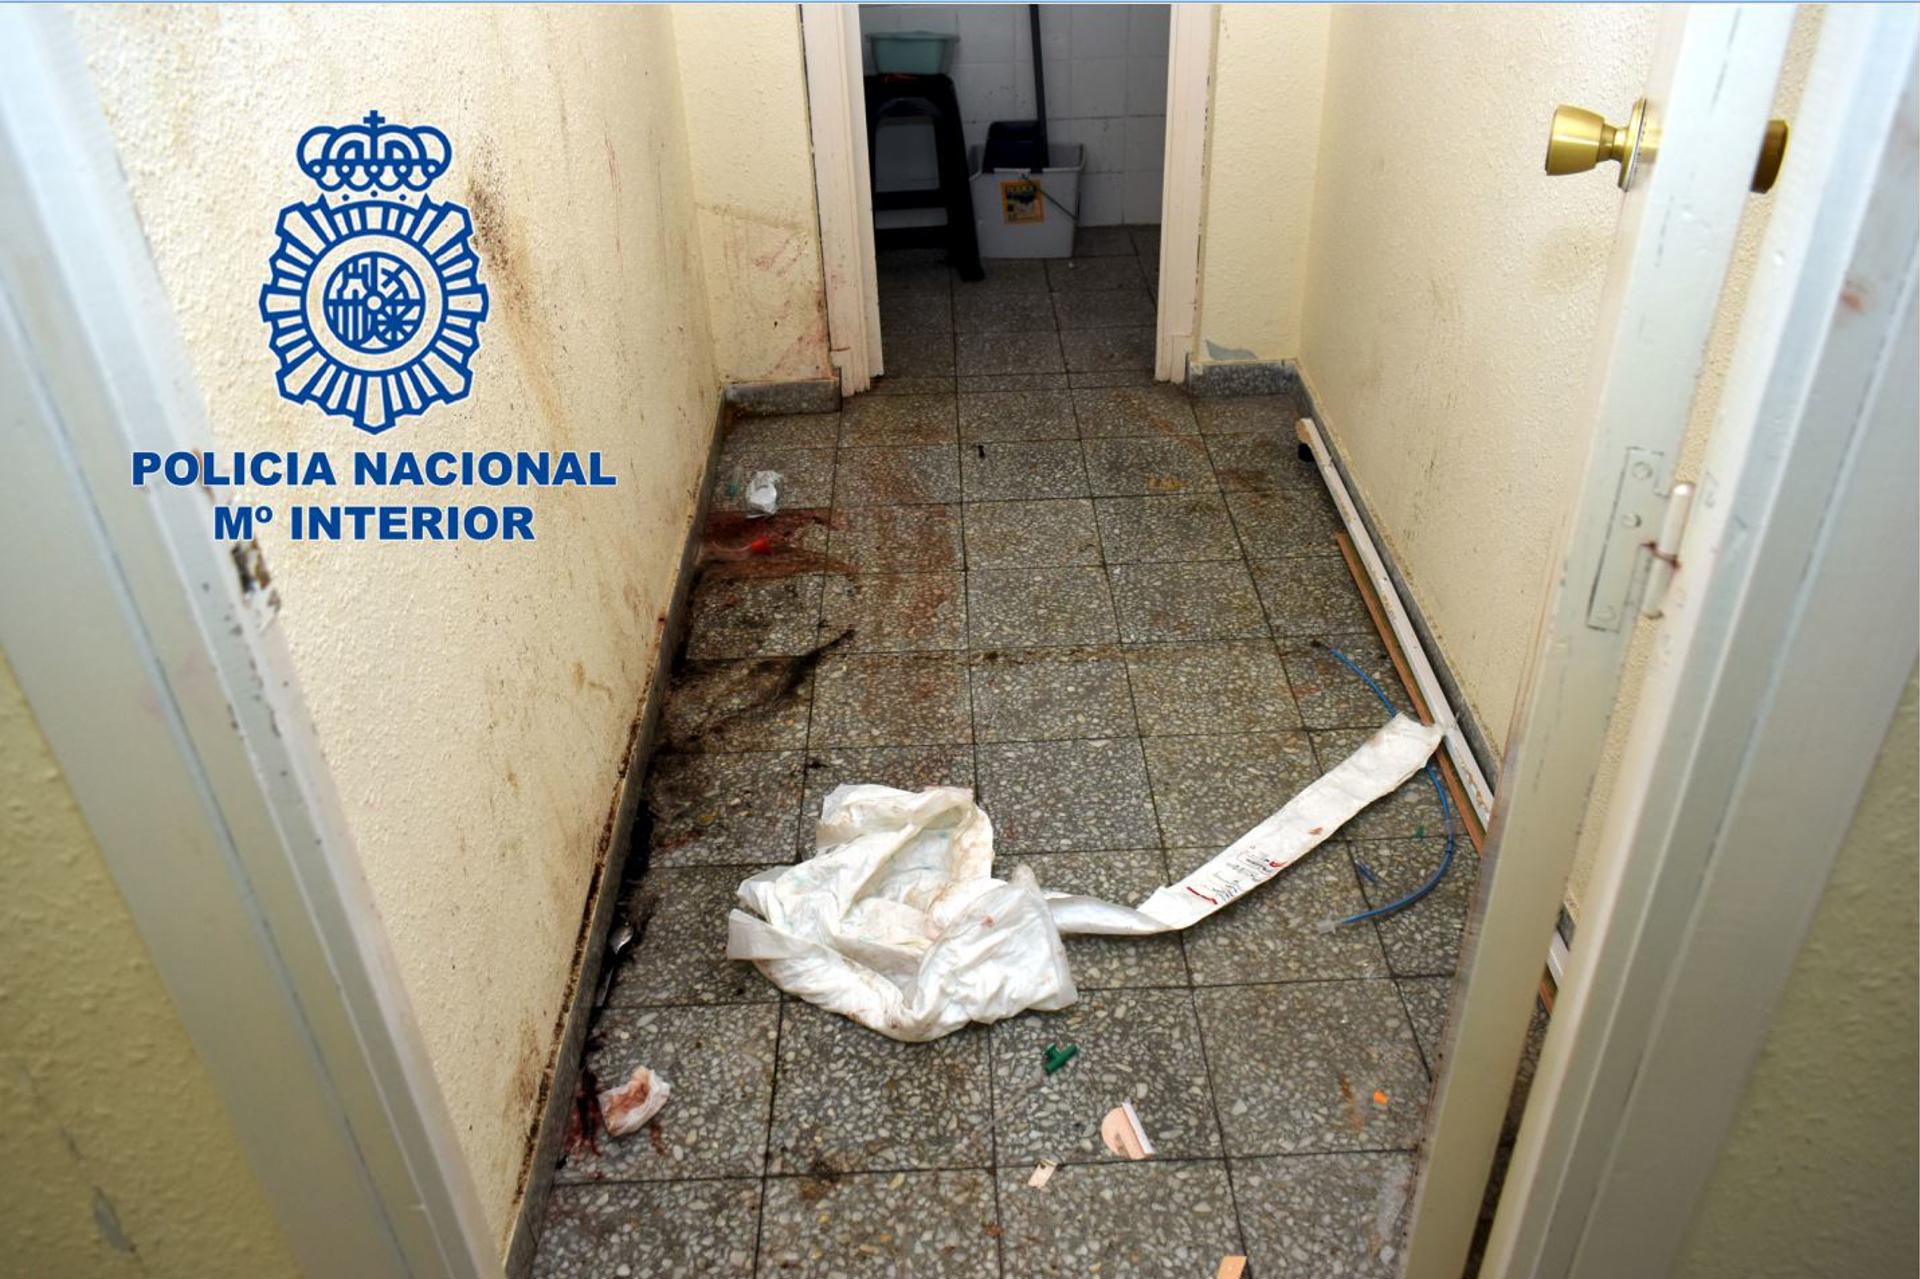 El lugar donde se cometió el crimen, en una imagen difundida por la Policía Nacional.